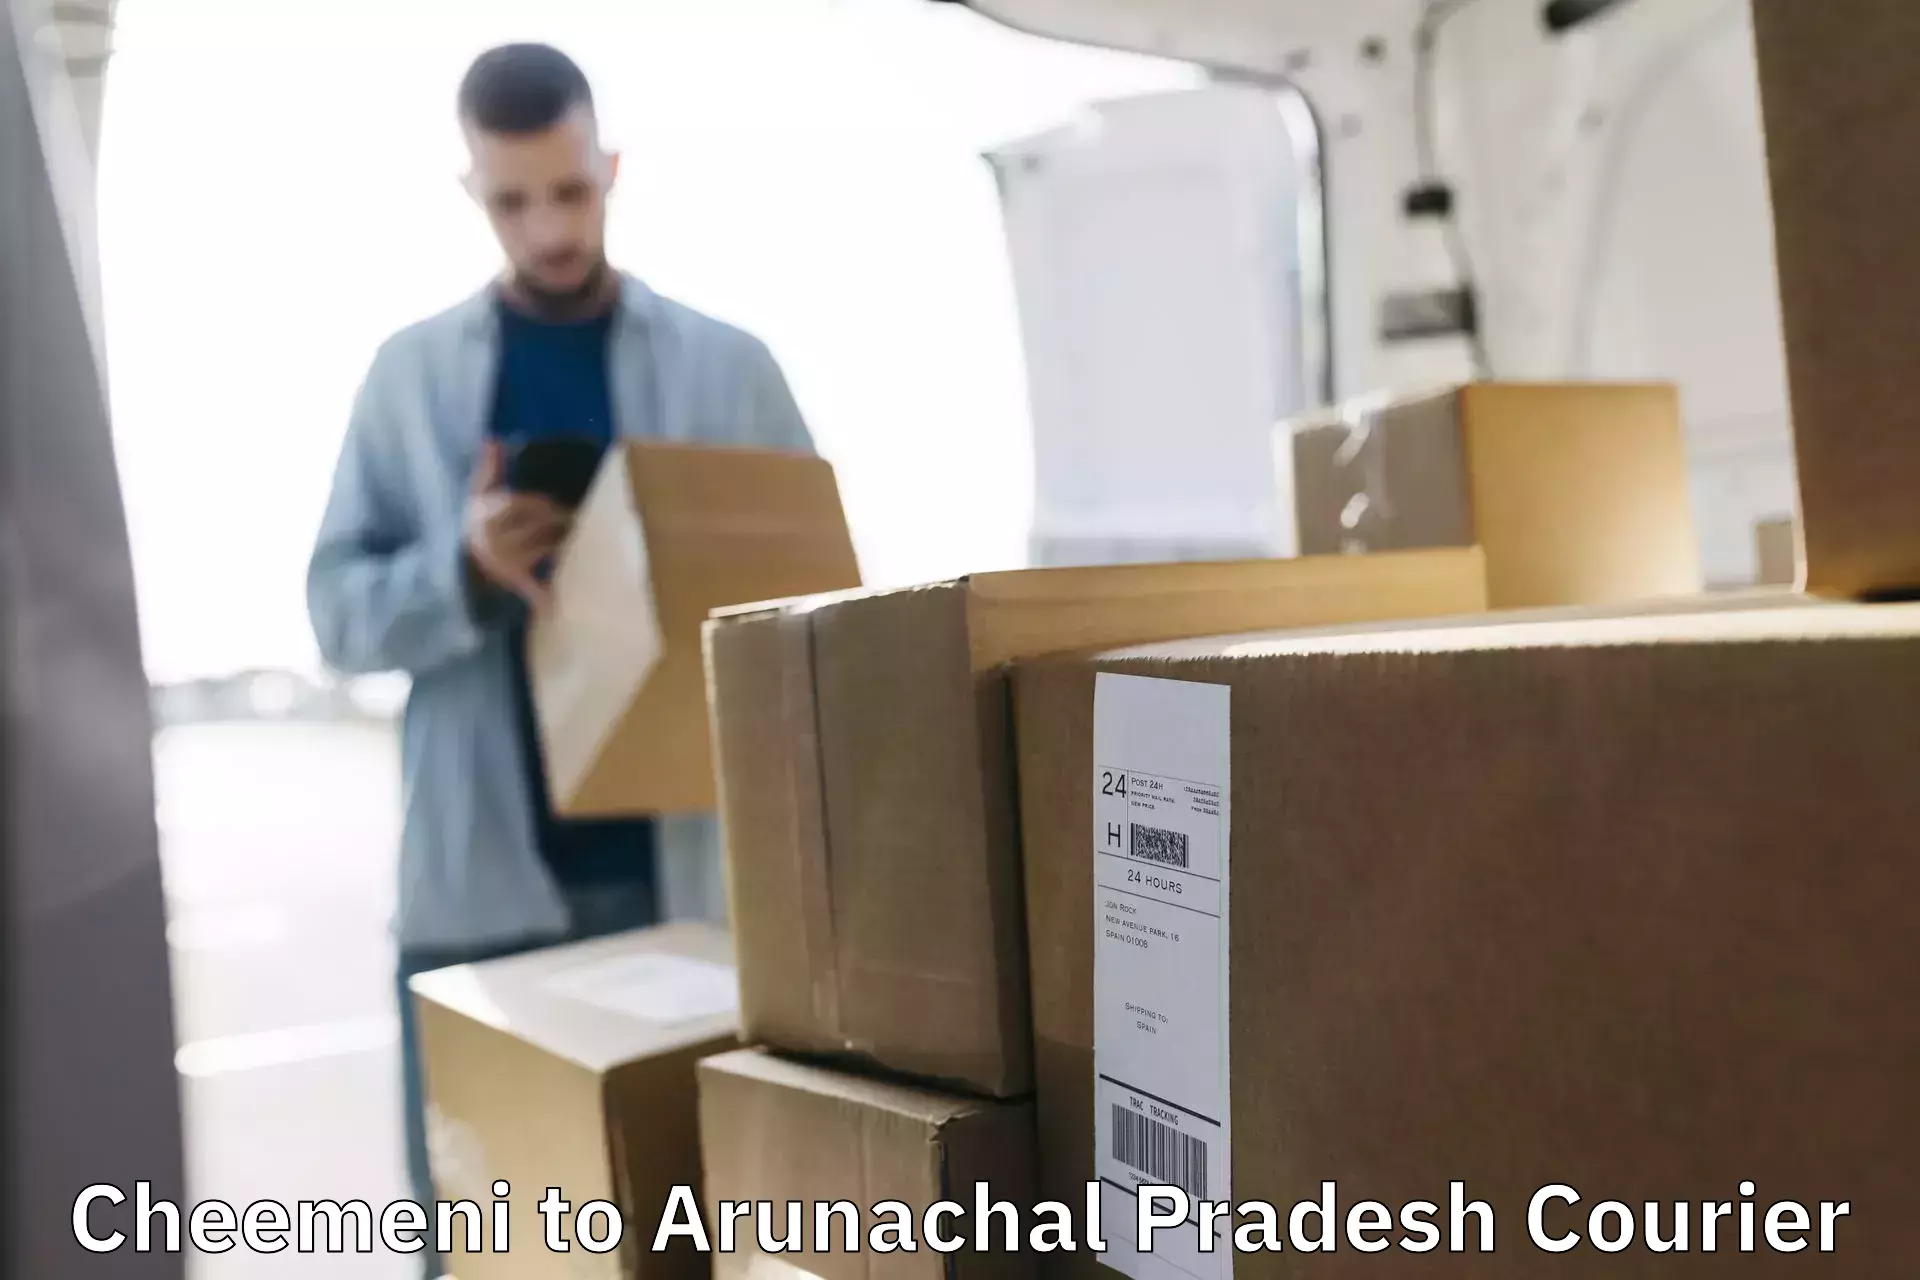 Nationwide parcel services Cheemeni to Arunachal Pradesh